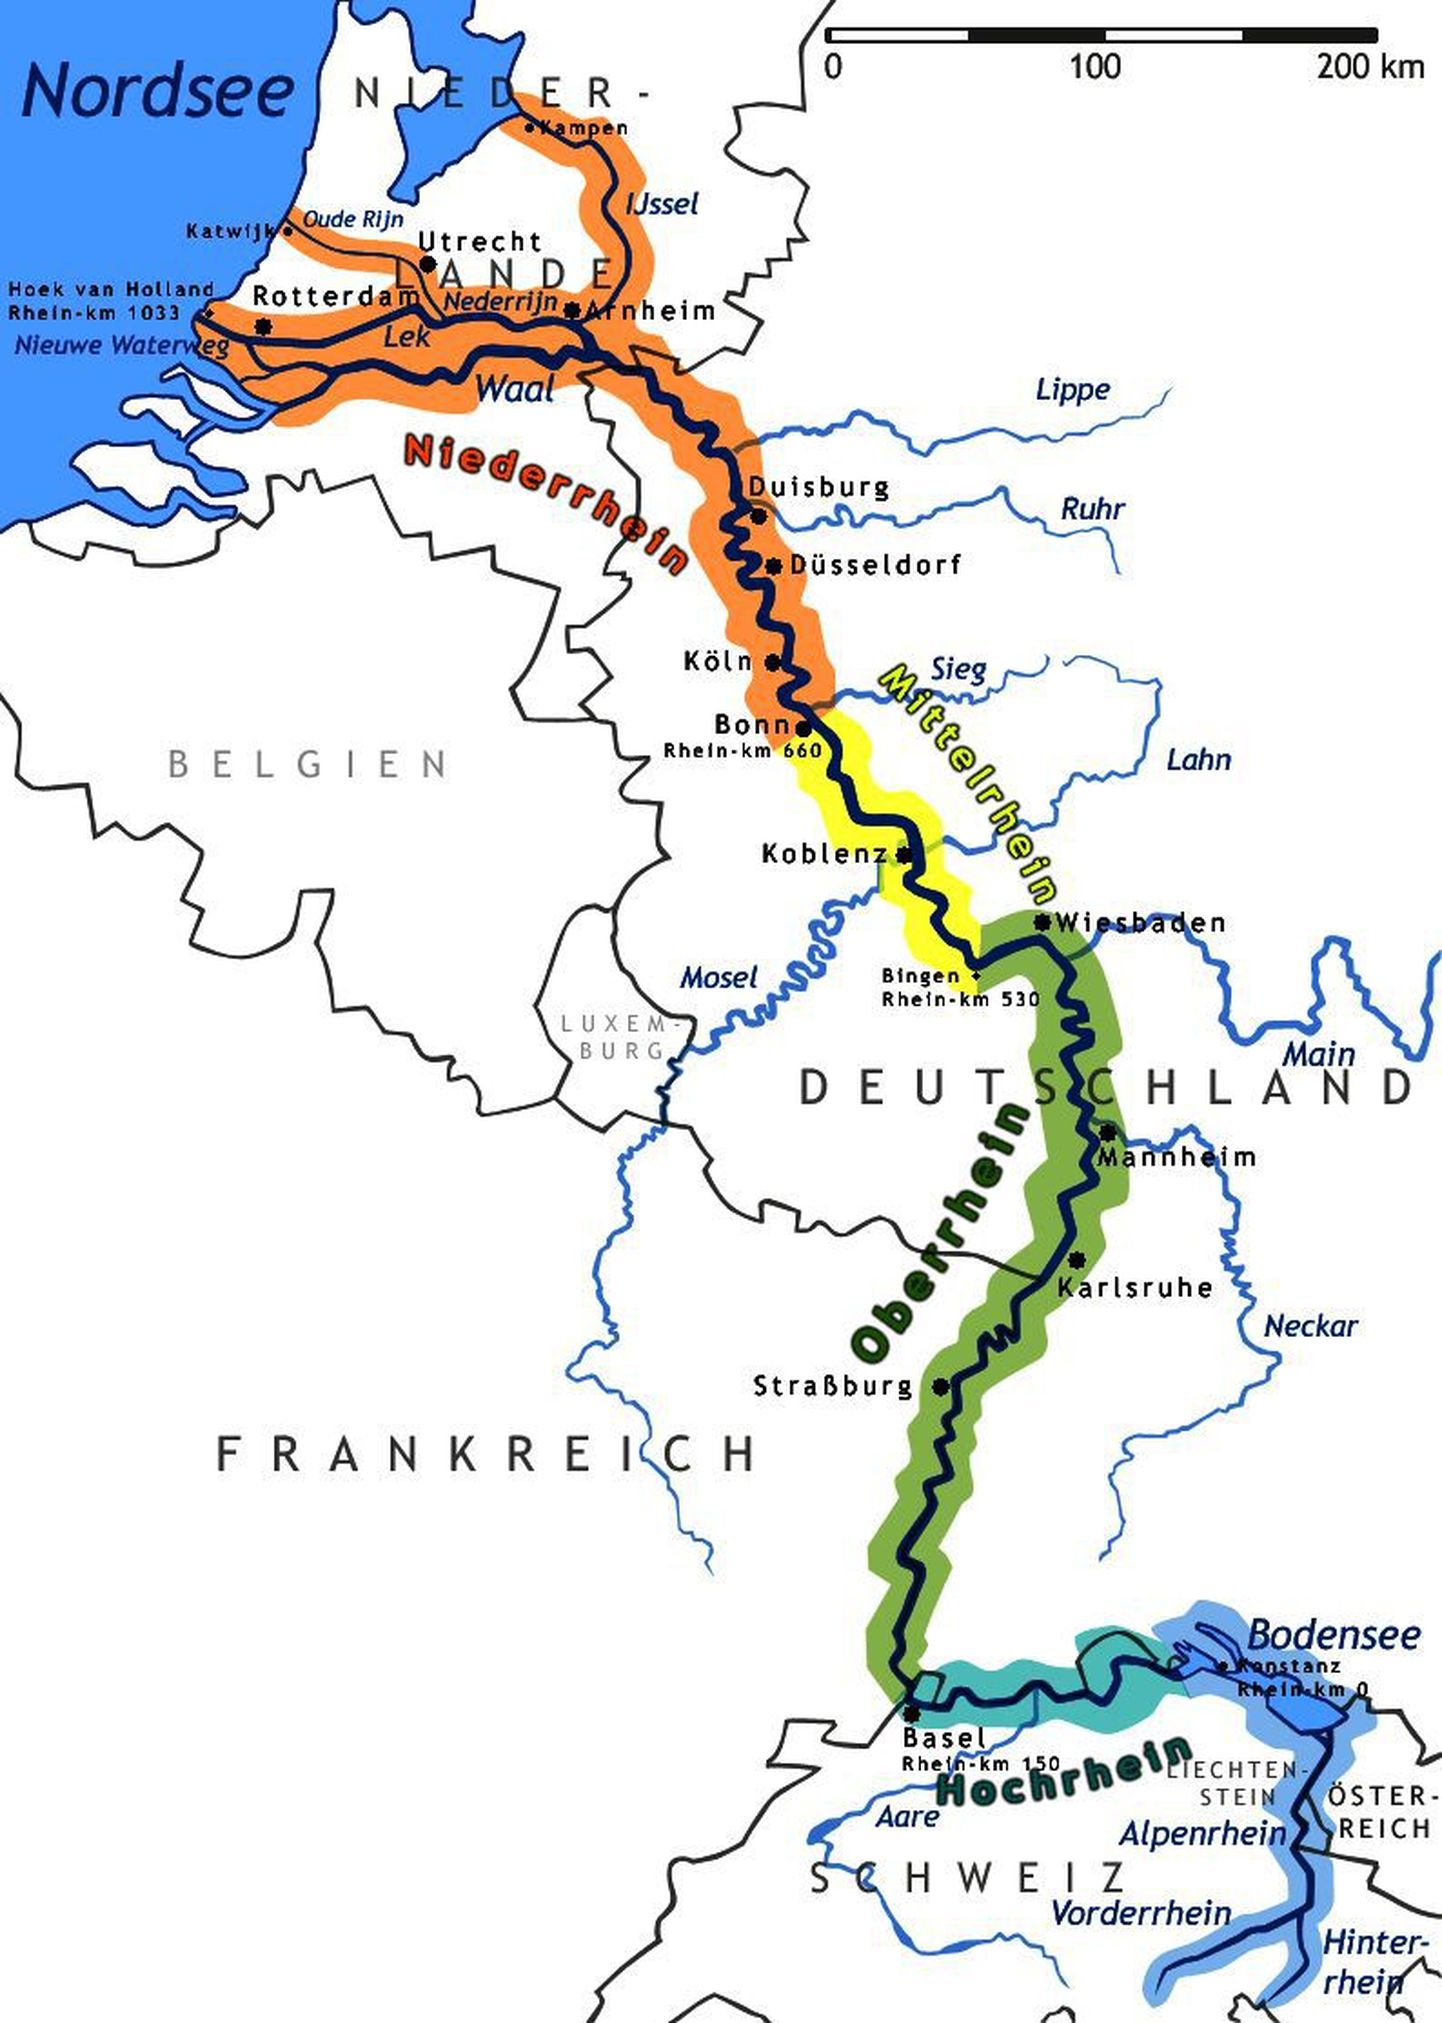 Reini jõgi voolab läbi kuue riigi.